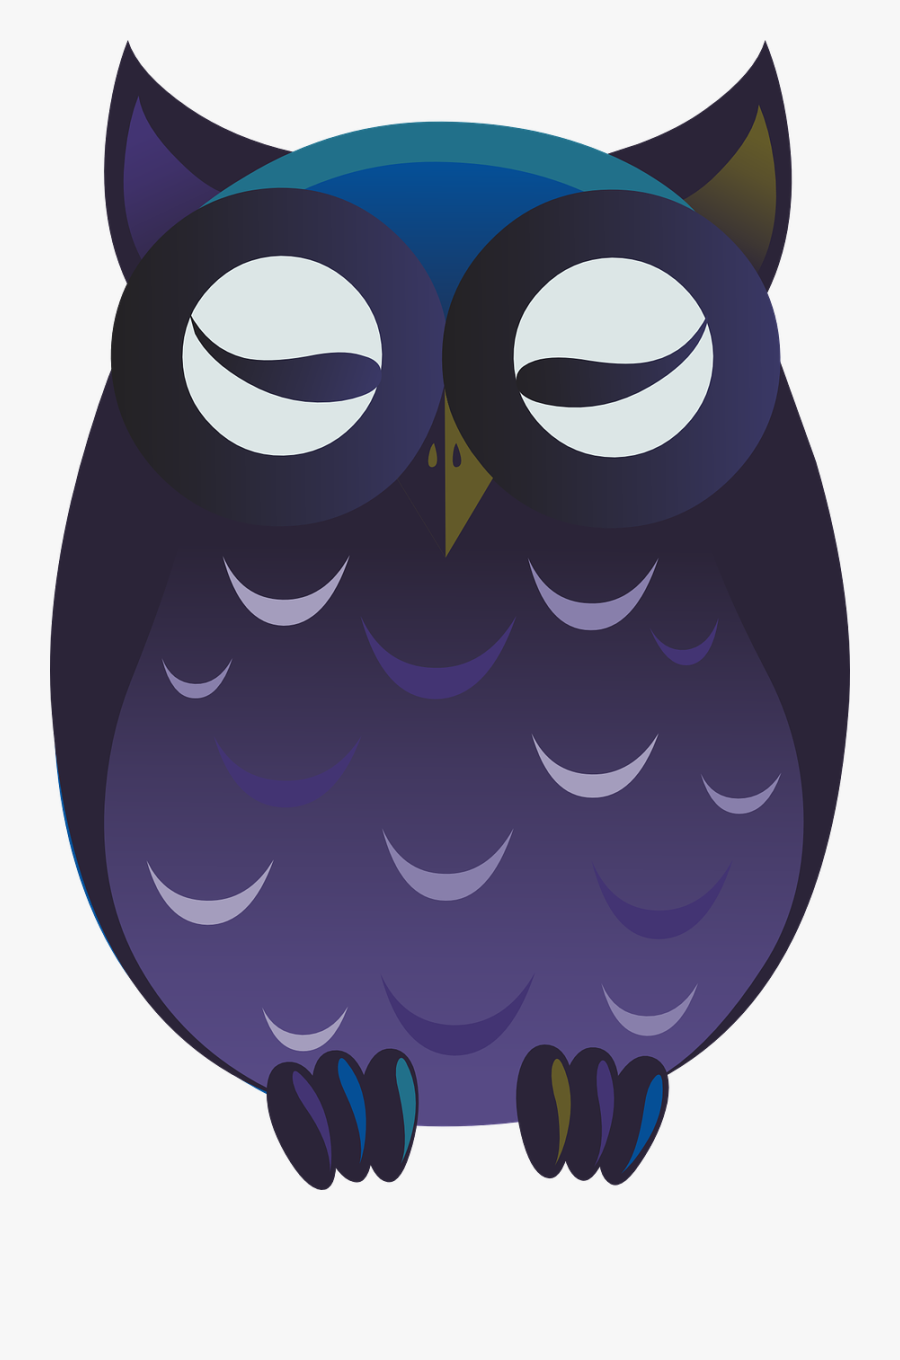 Owl Purple Cartoon Free Picture - การ์ตูน นก น่า รัก ๆ .png, Transparent Clipart